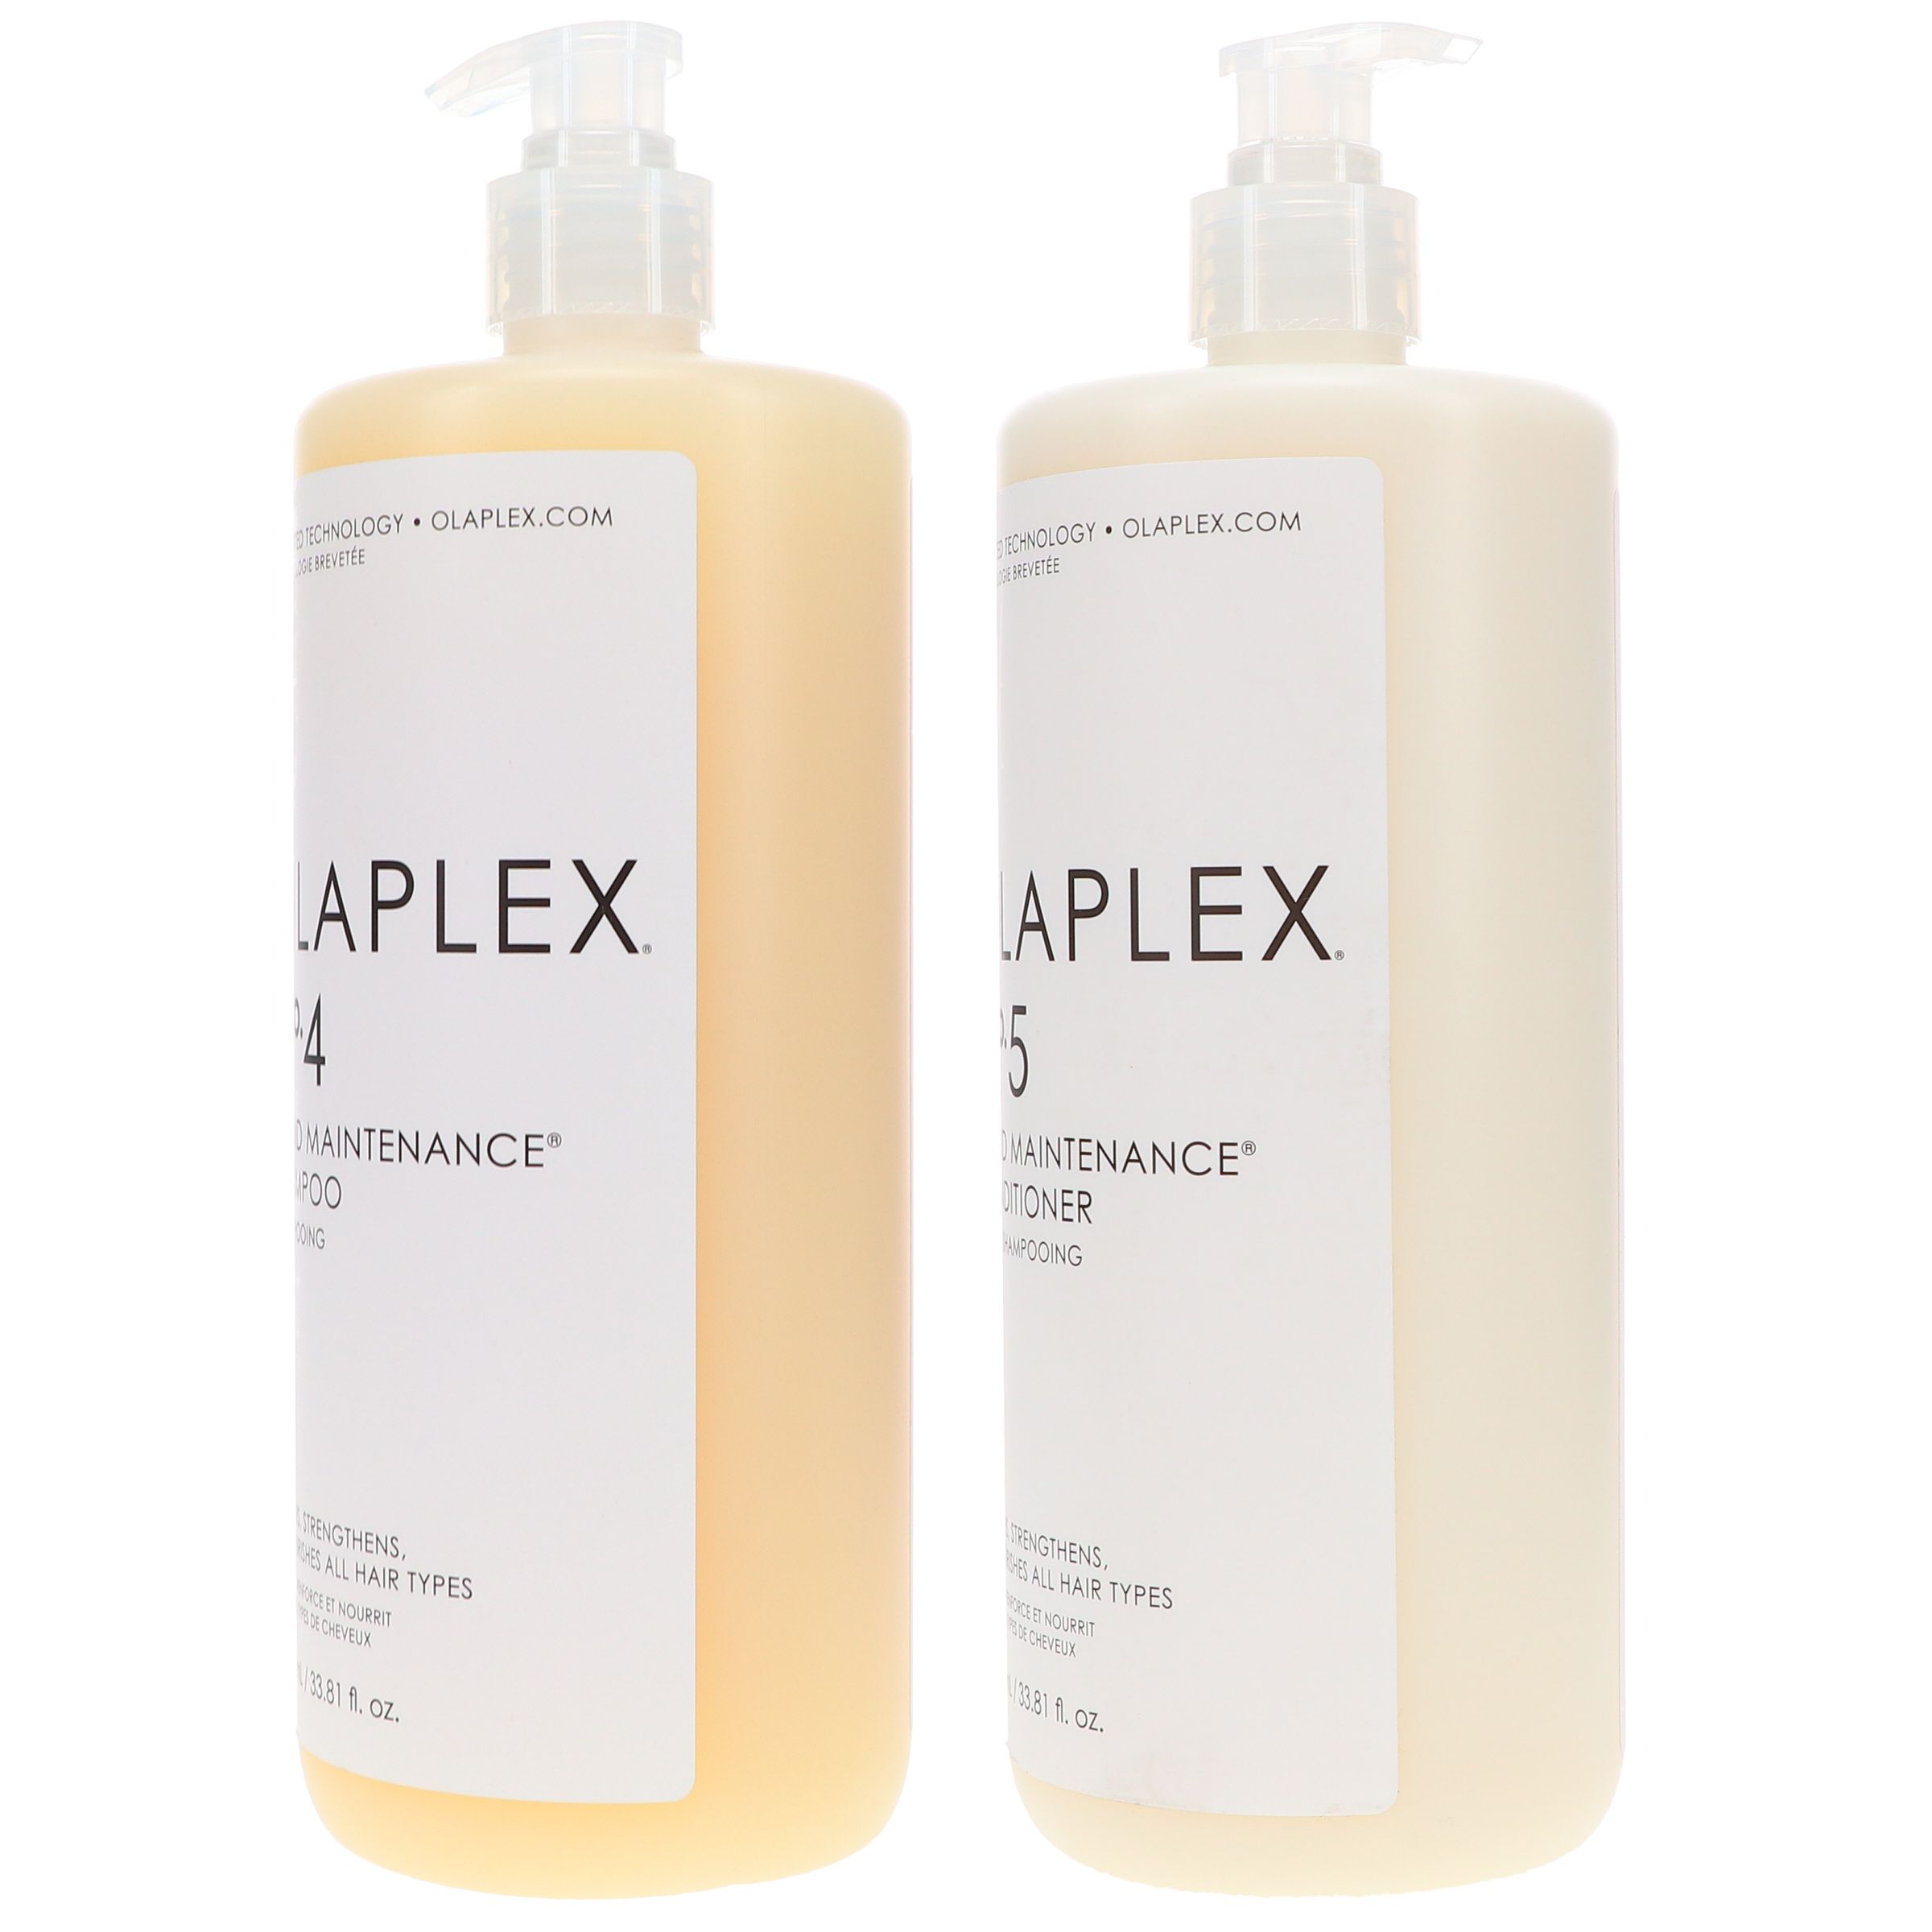 Olaplex Bond Maintenance No. 4 Shampoo and No. 5 Conditioner, 33.8 oz COMBO | Walmart (US)